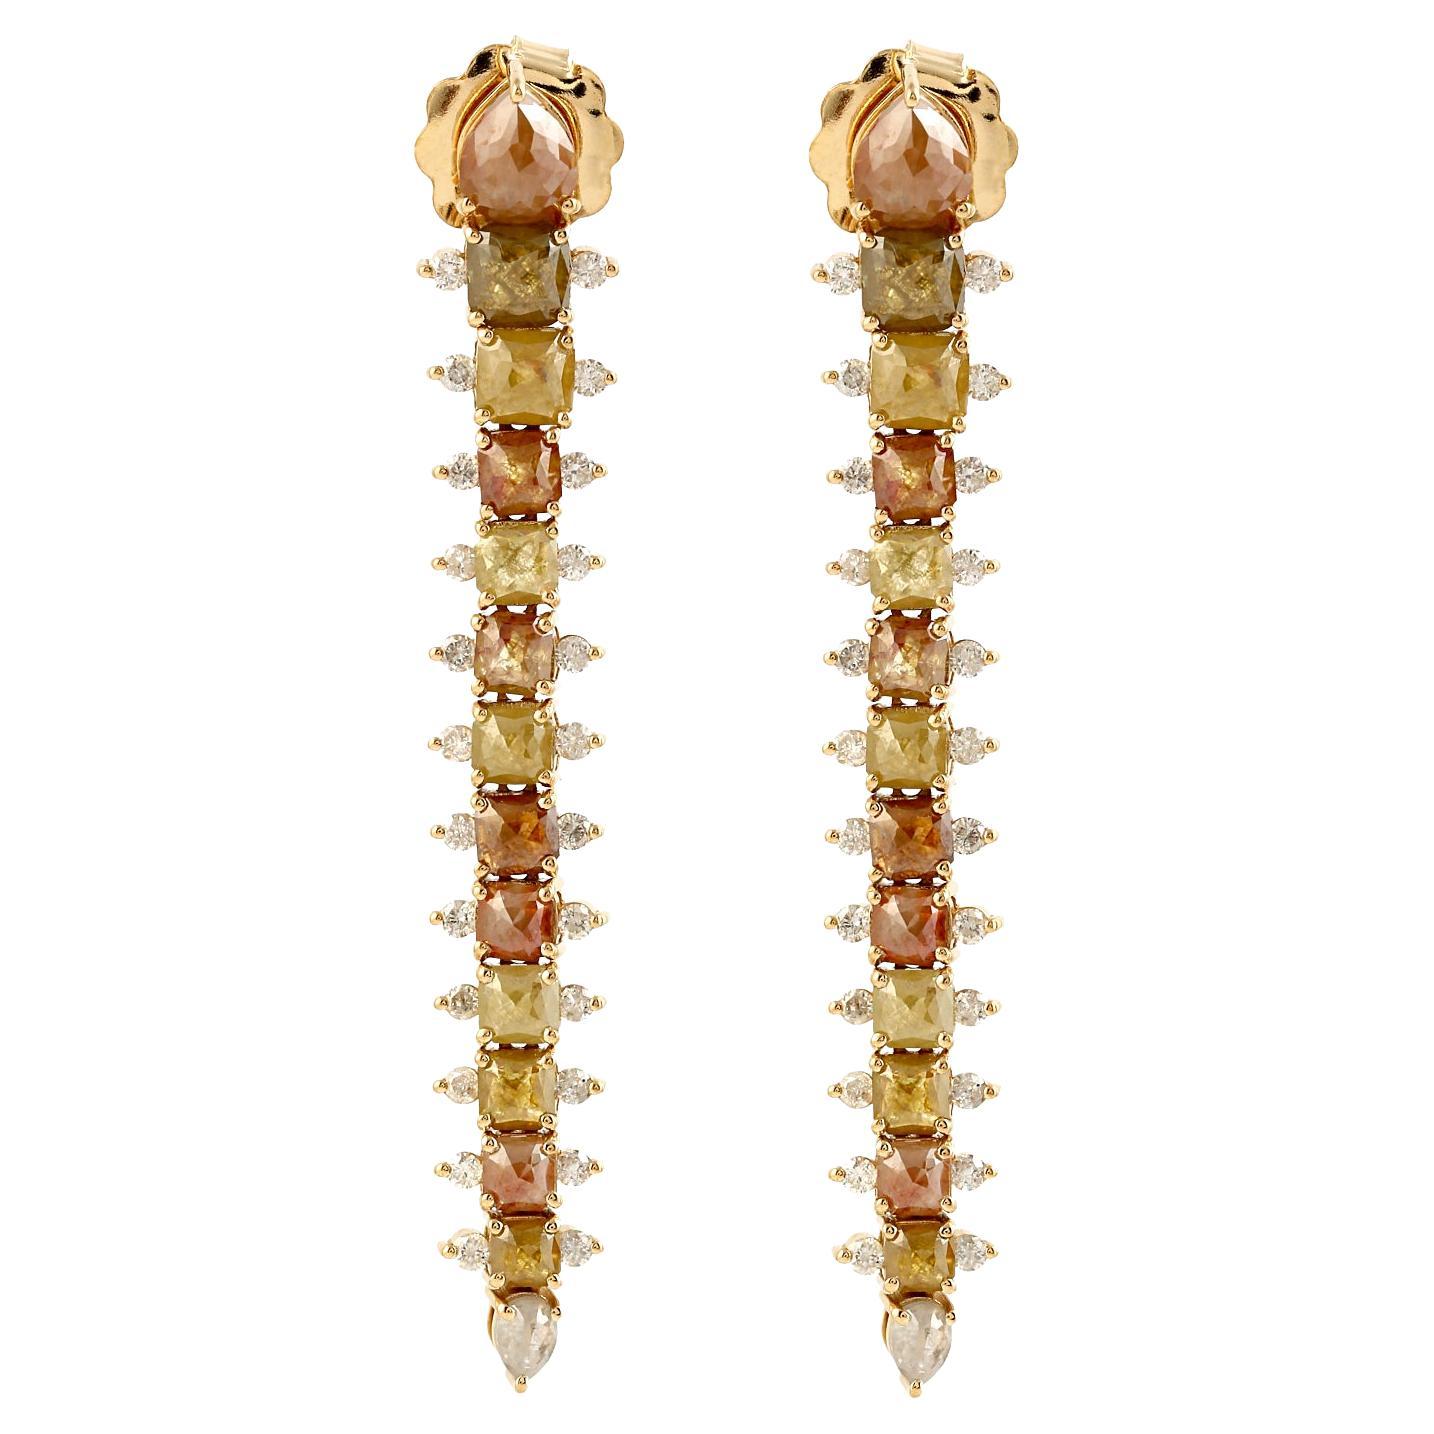 Tapered designer ice diamonds long earrings in 18k rose gold